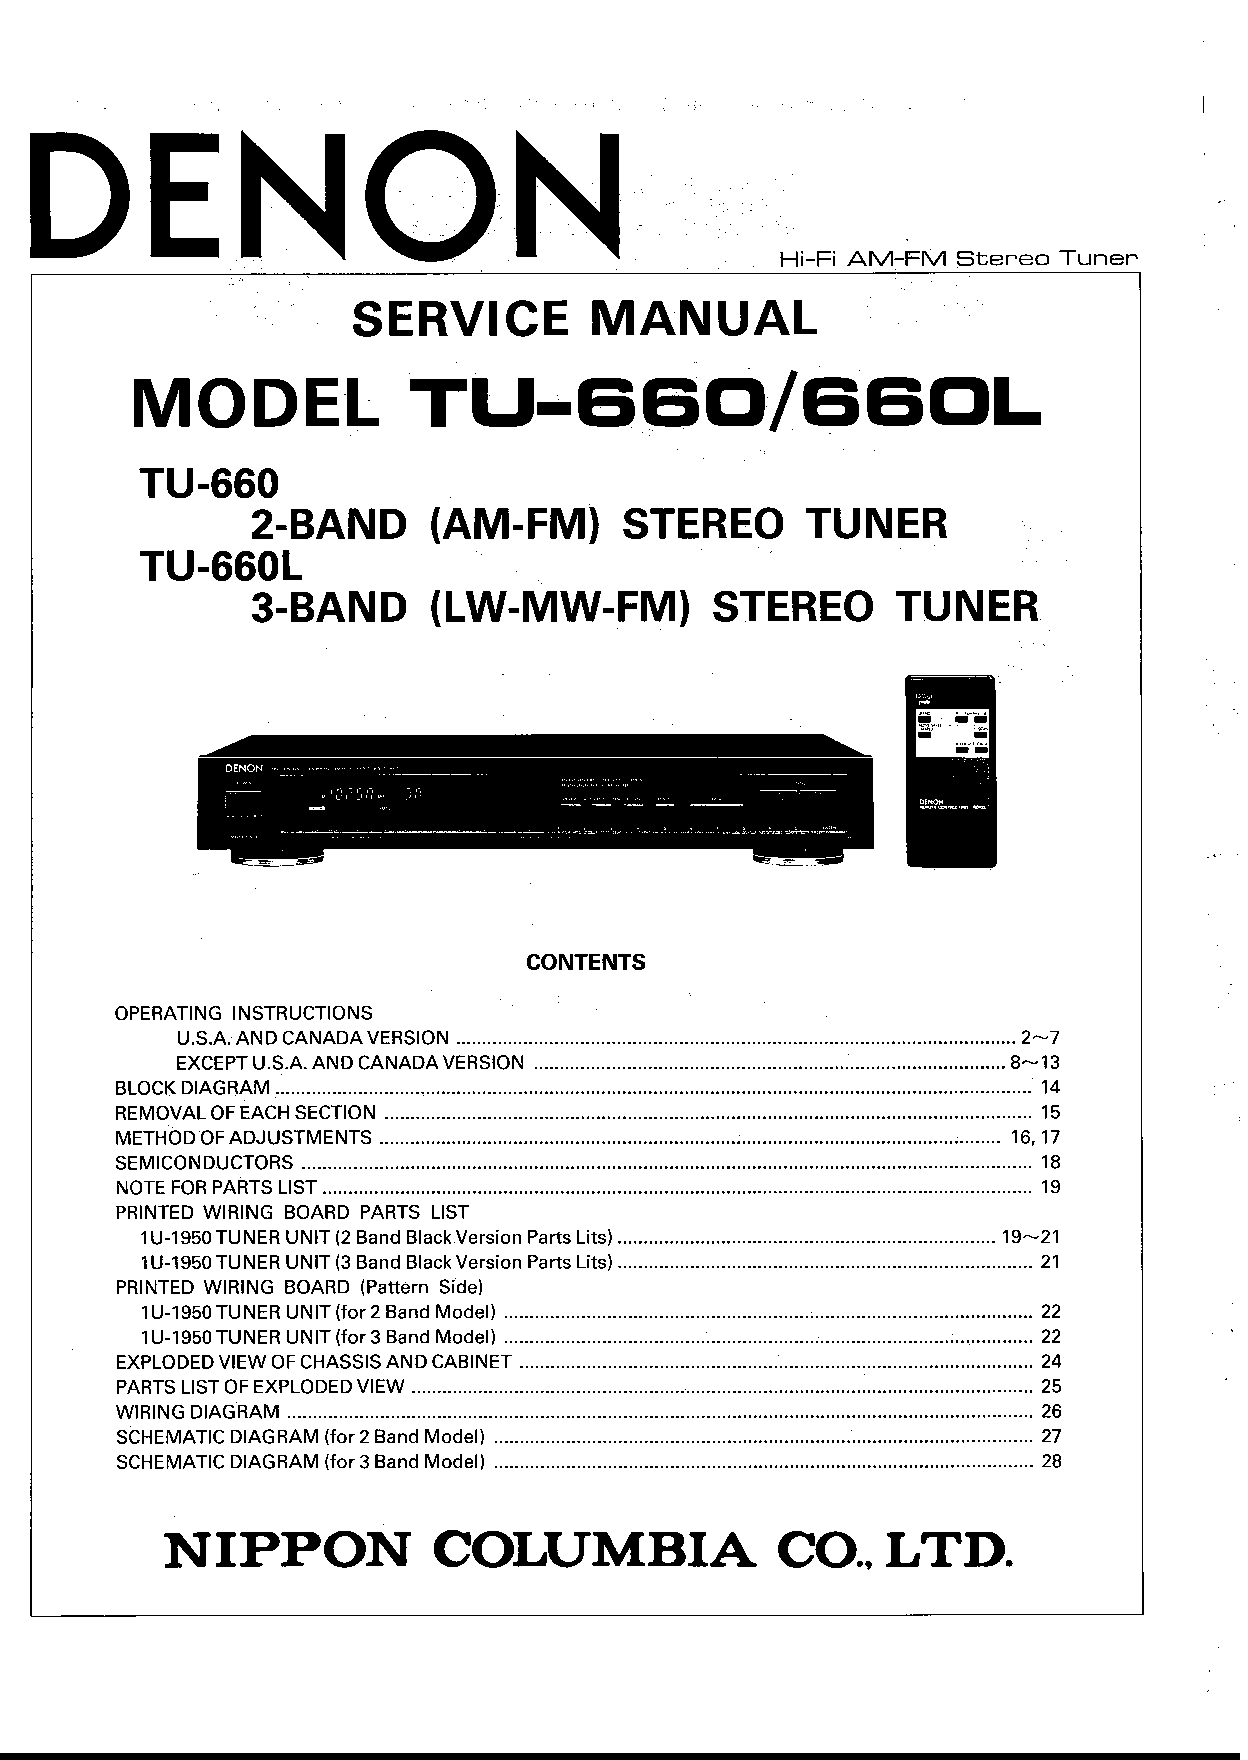 Denon TU-660L Service Manual